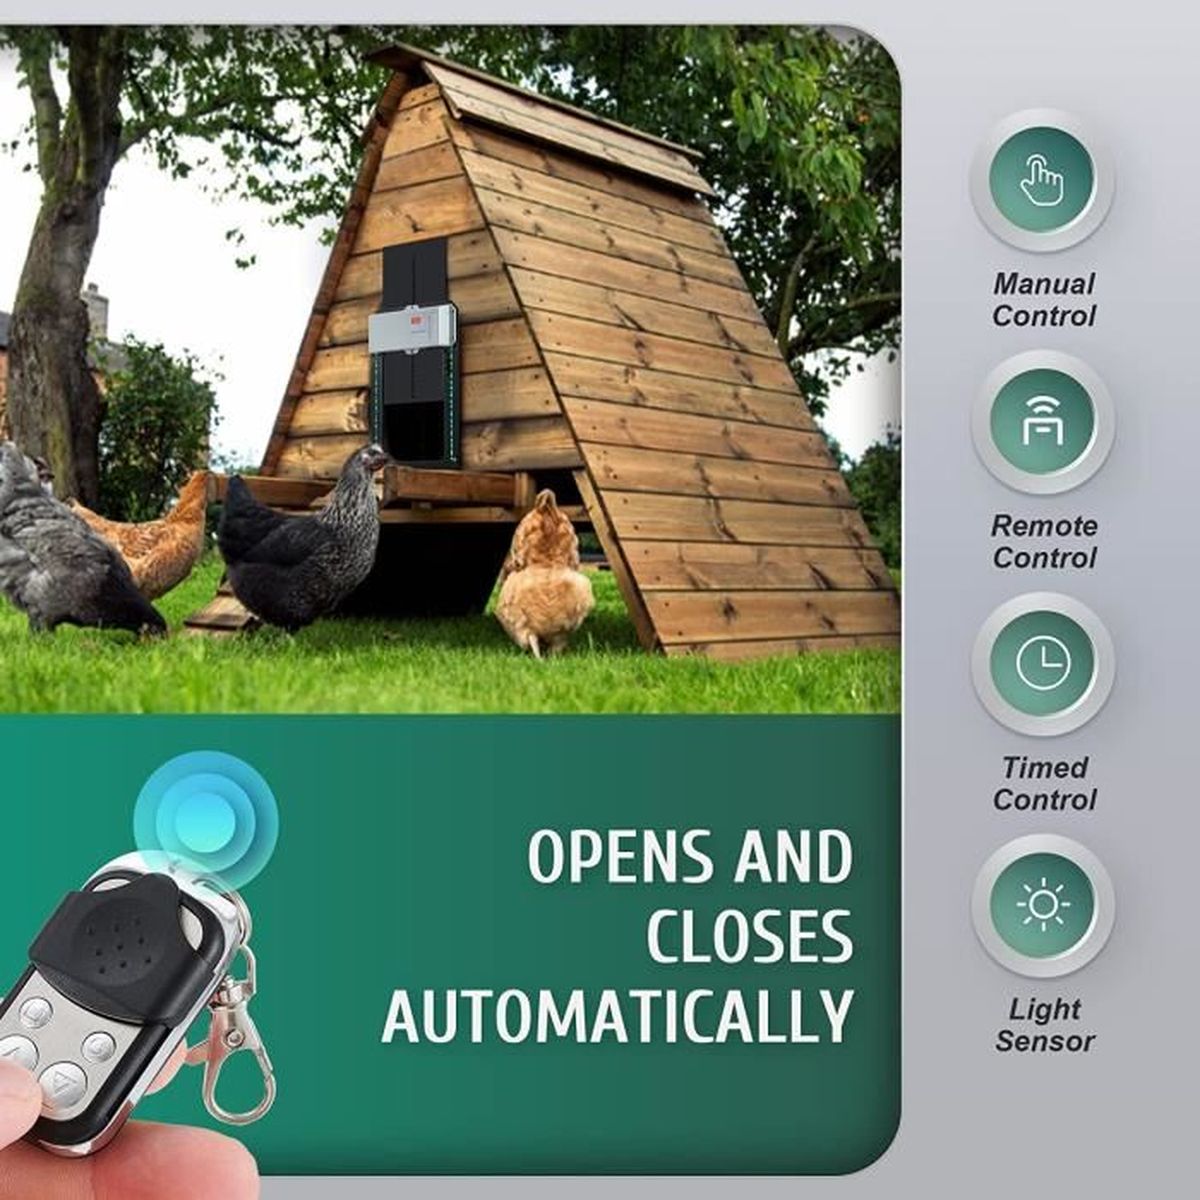 Basique CO-Z Ouvre-Porte Automatique pour Poulailler avec Minuterie Capteur de Lumière Porte Electrique pour Poulailler Compatible avec Panneaux Solaires 